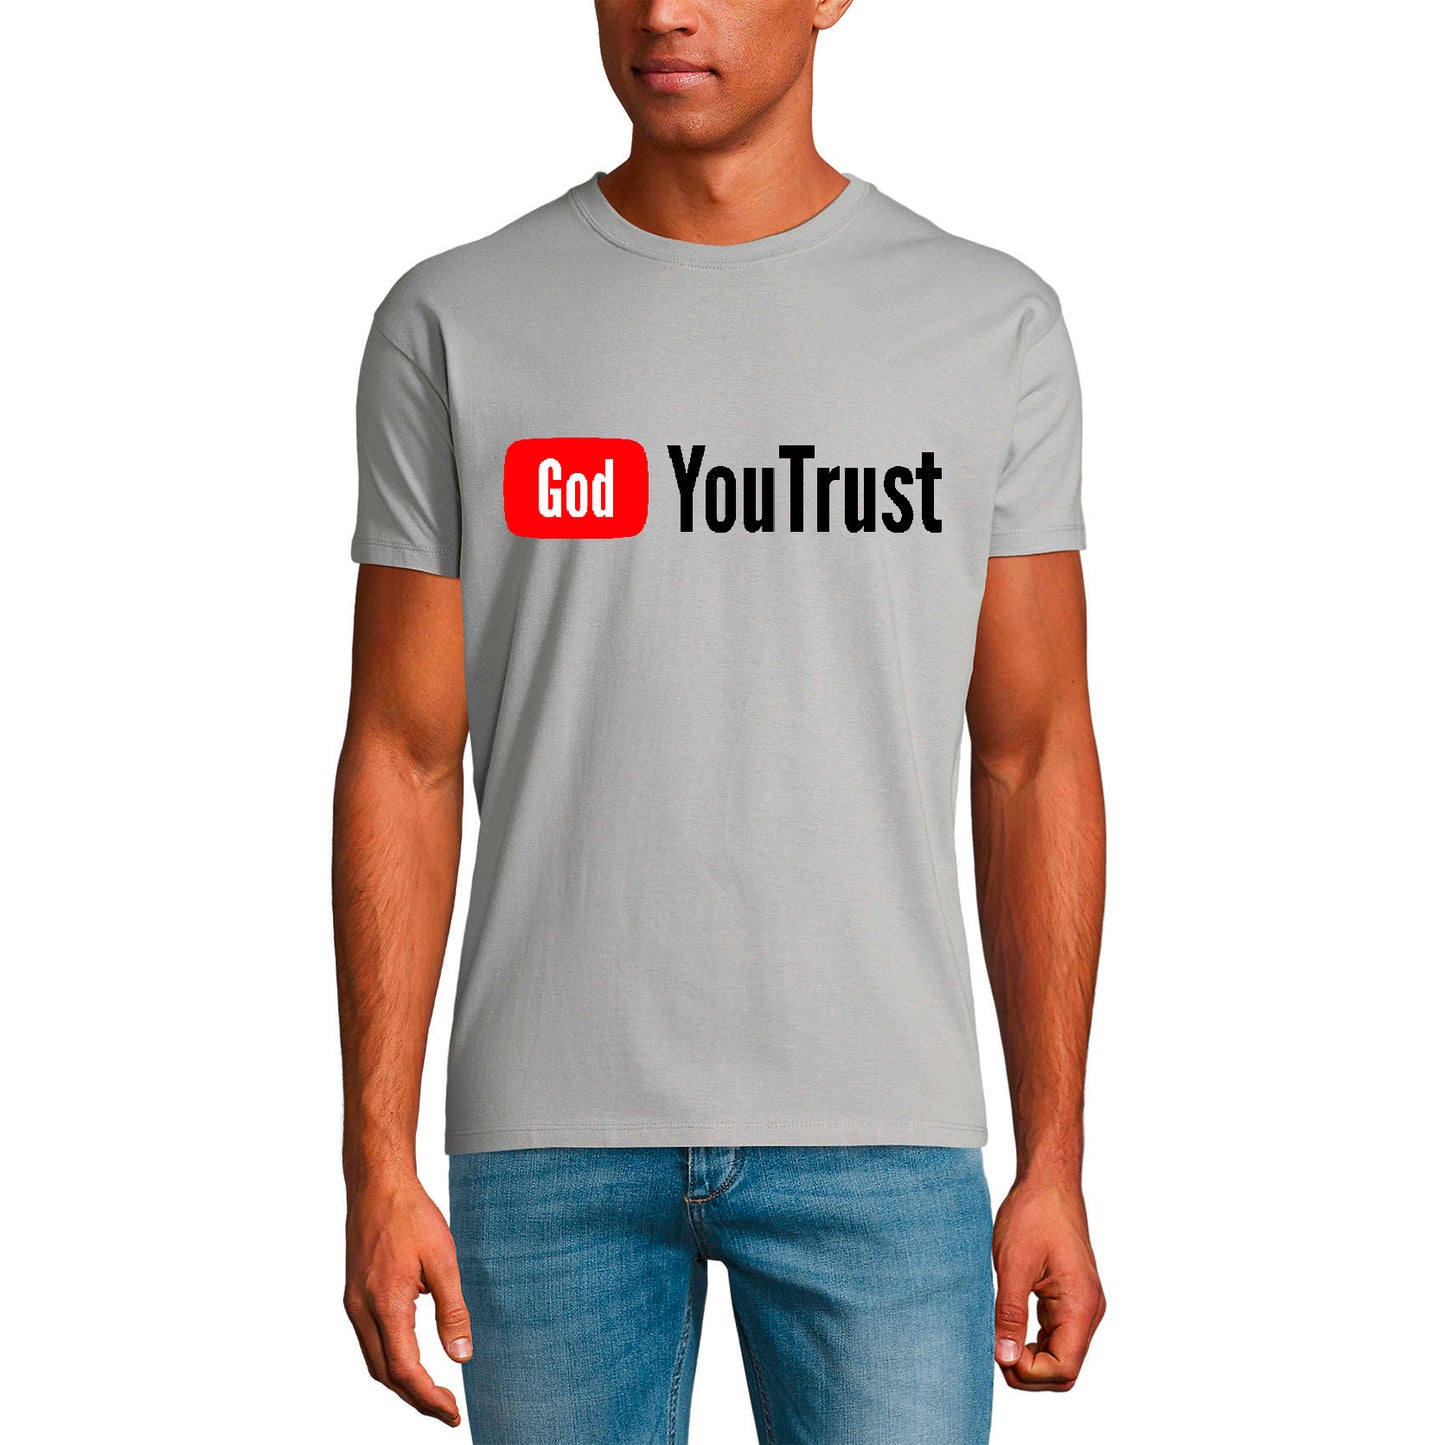 ULTRABASIC Men's Religious T-Shirt God You Trust - Christ Shirt